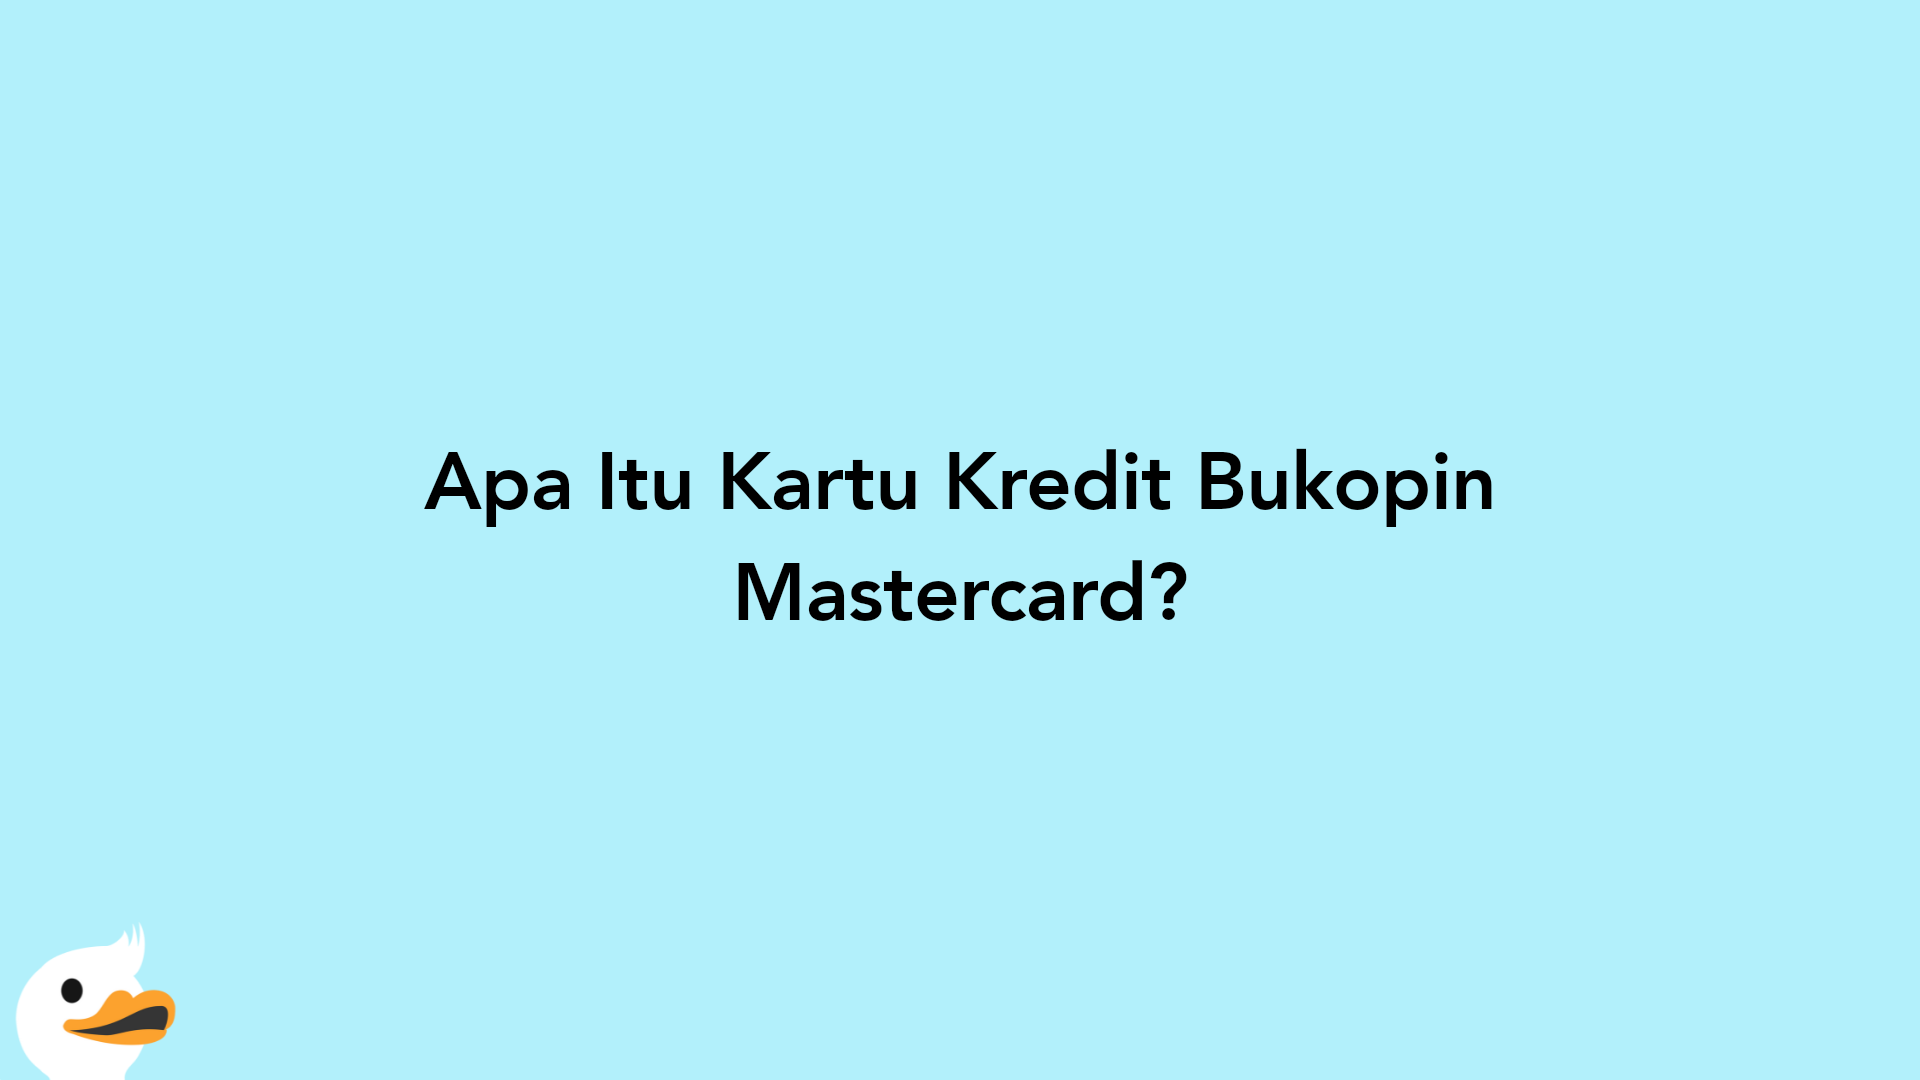 Apa Itu Kartu Kredit Bukopin Mastercard?